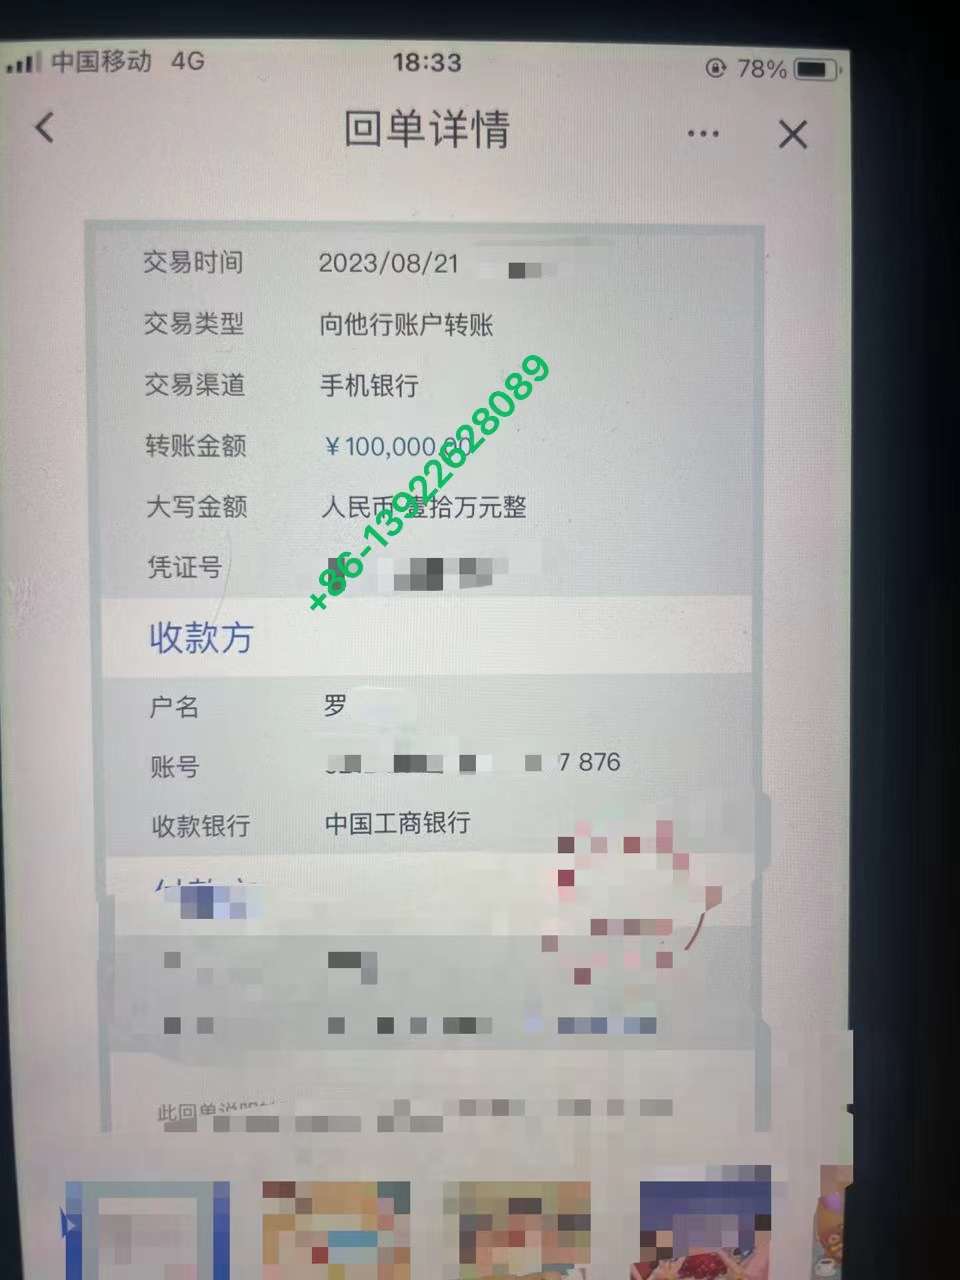 مشتری قدیمی پایه مبل KINHONG 10w RMB را به عنوان کانتینر 40HQ پایه مبلمان ارسال می کند.